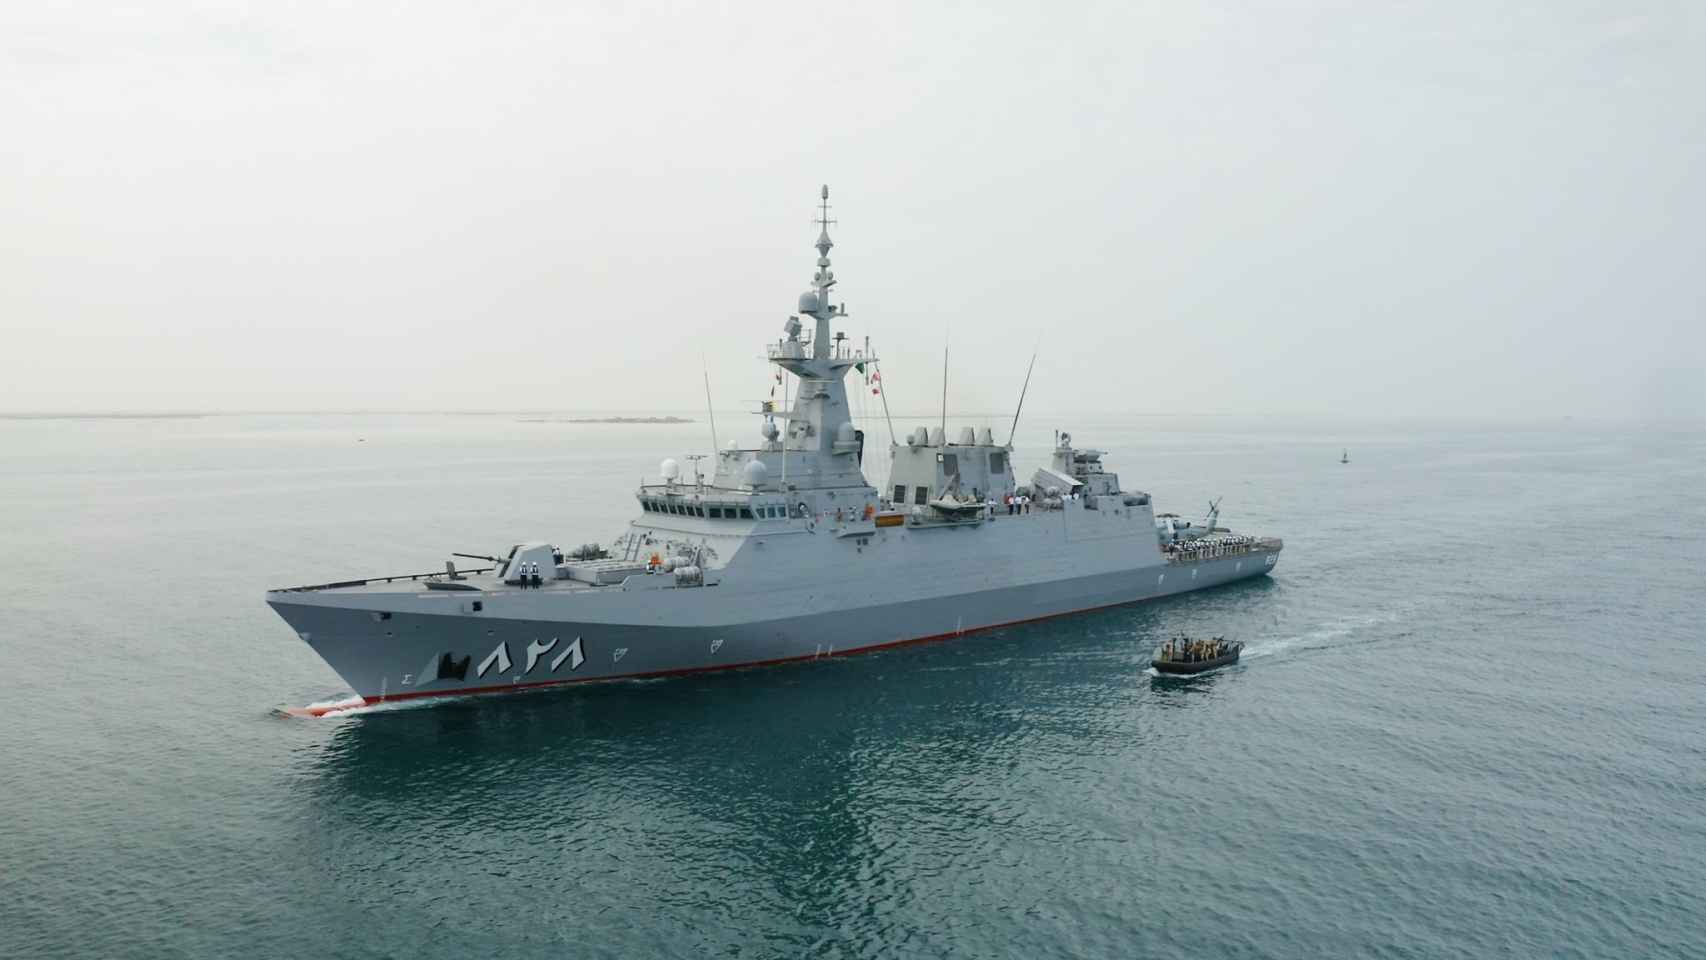 HMS Al-Jubail